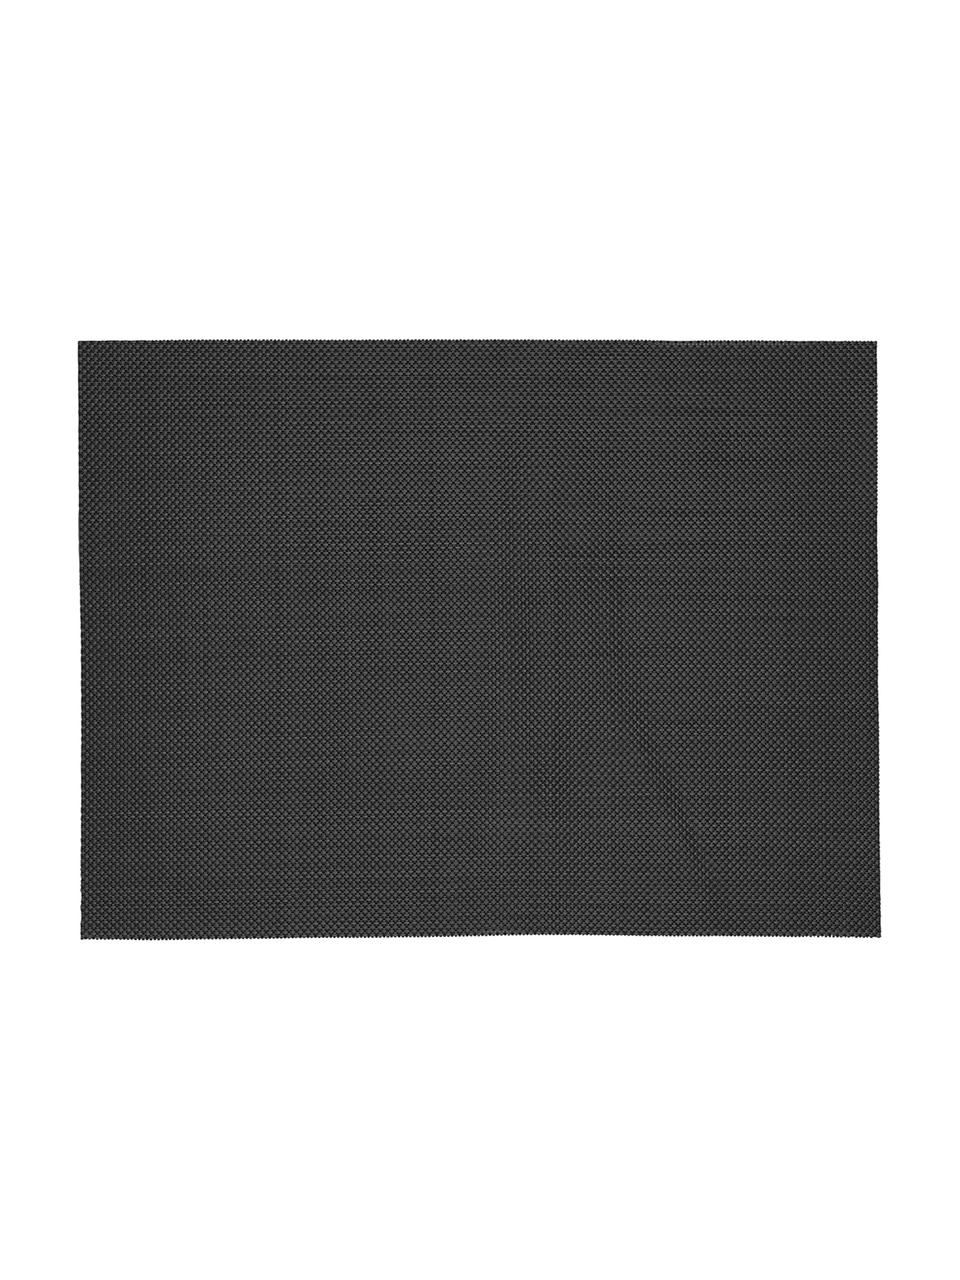 Podkładka z tworzywa sztucznego Mabra, 2 szt., Tworzywo sztuczne (PVC), Czarny, S 30 x D 40 cm